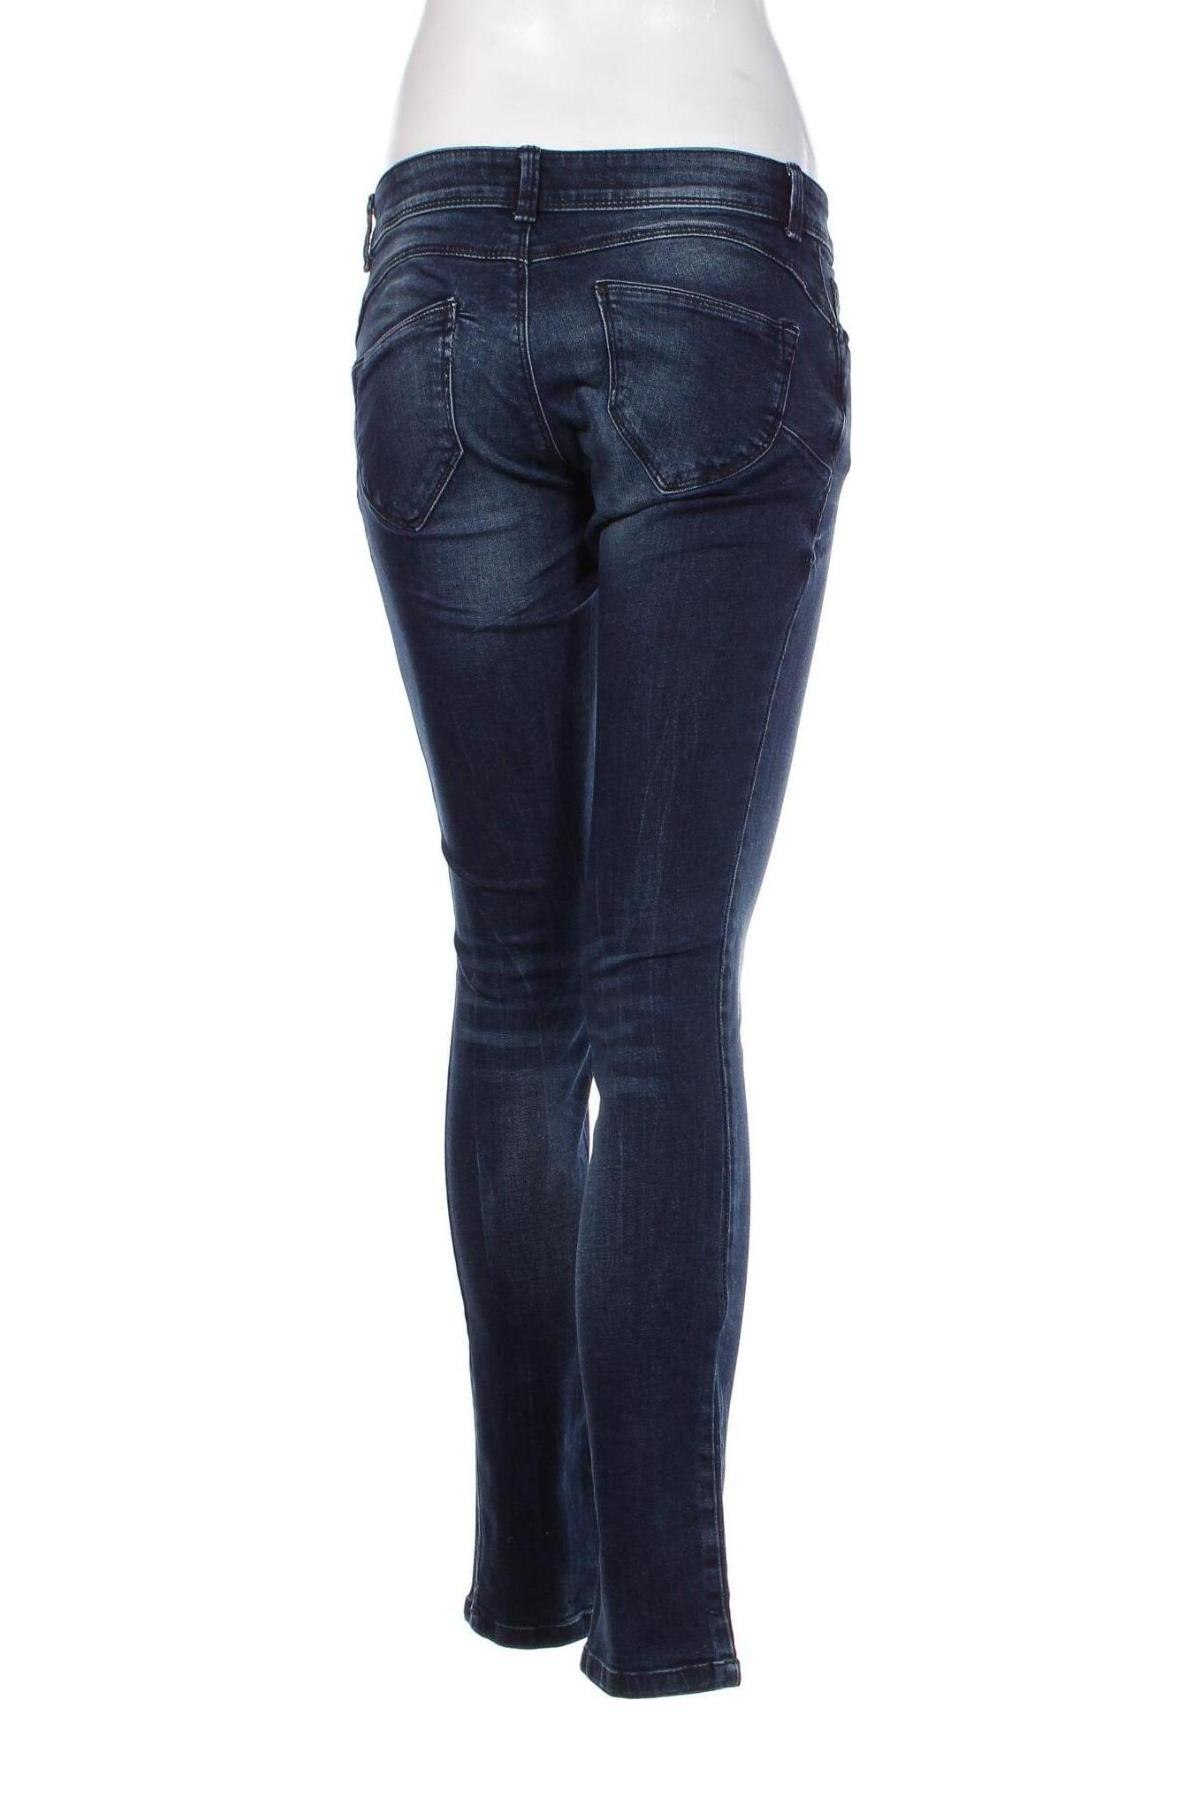 Damen Jeans C&A - günstig bei Remix - #119240467